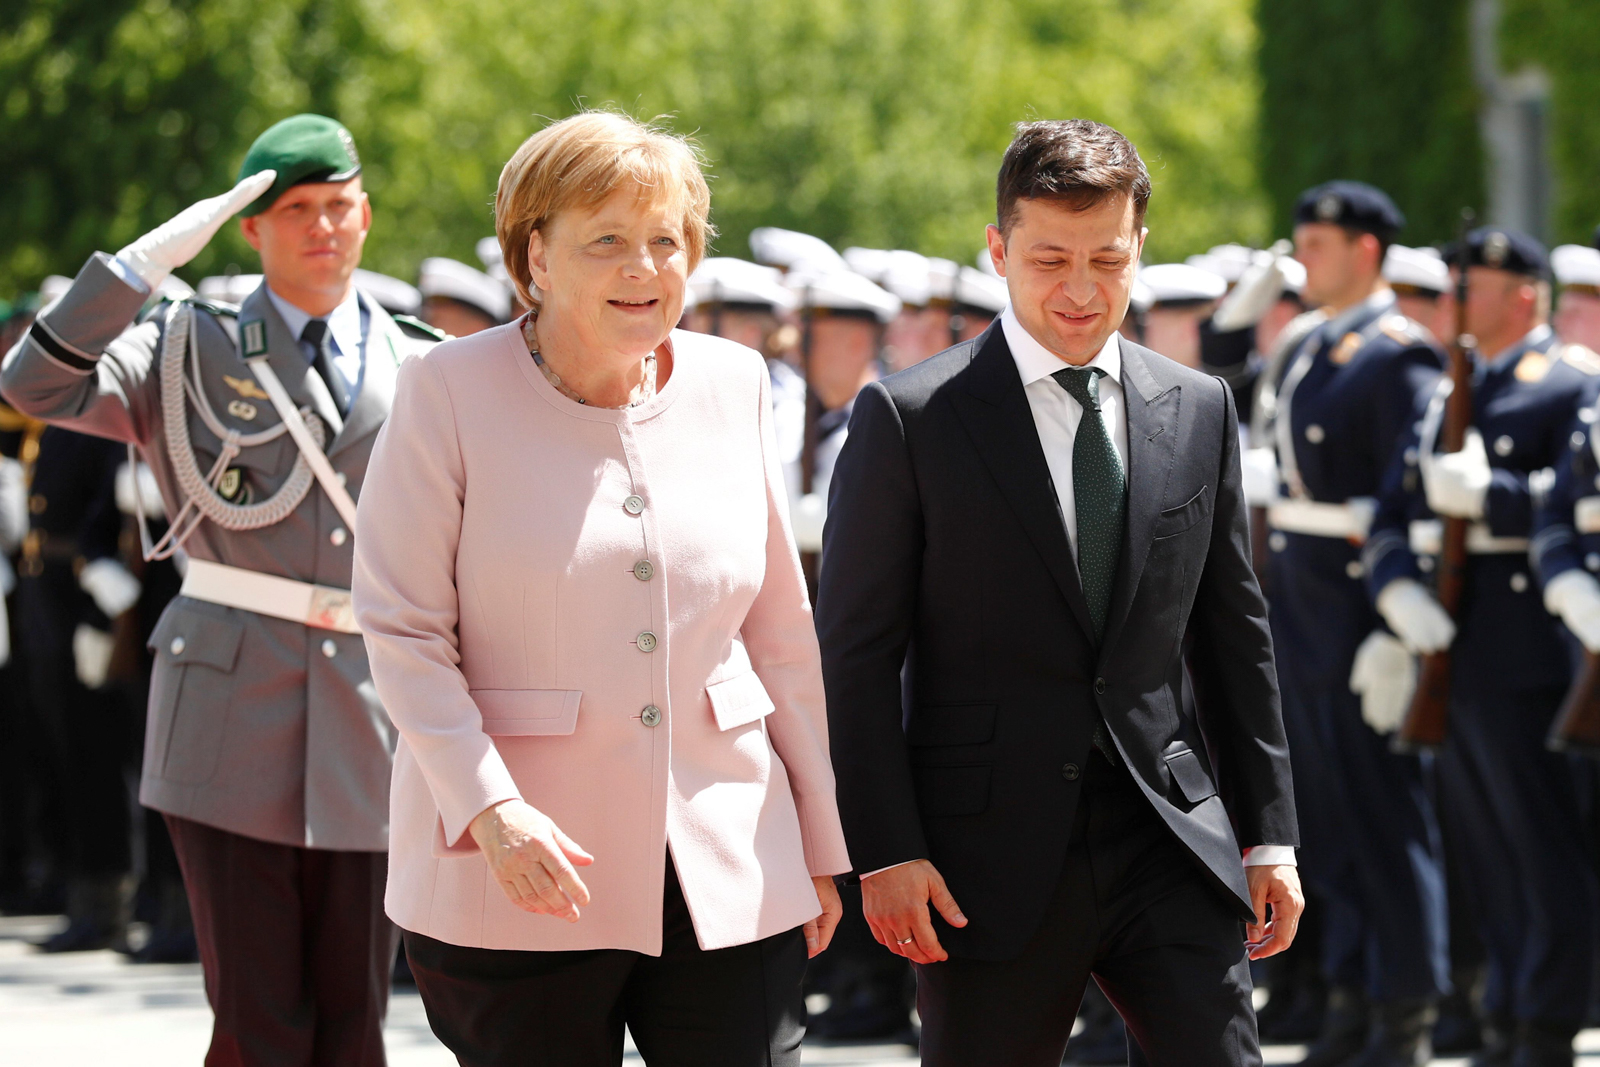 Меркель анонсировала первые переговоры России с Украиной при Зеленском